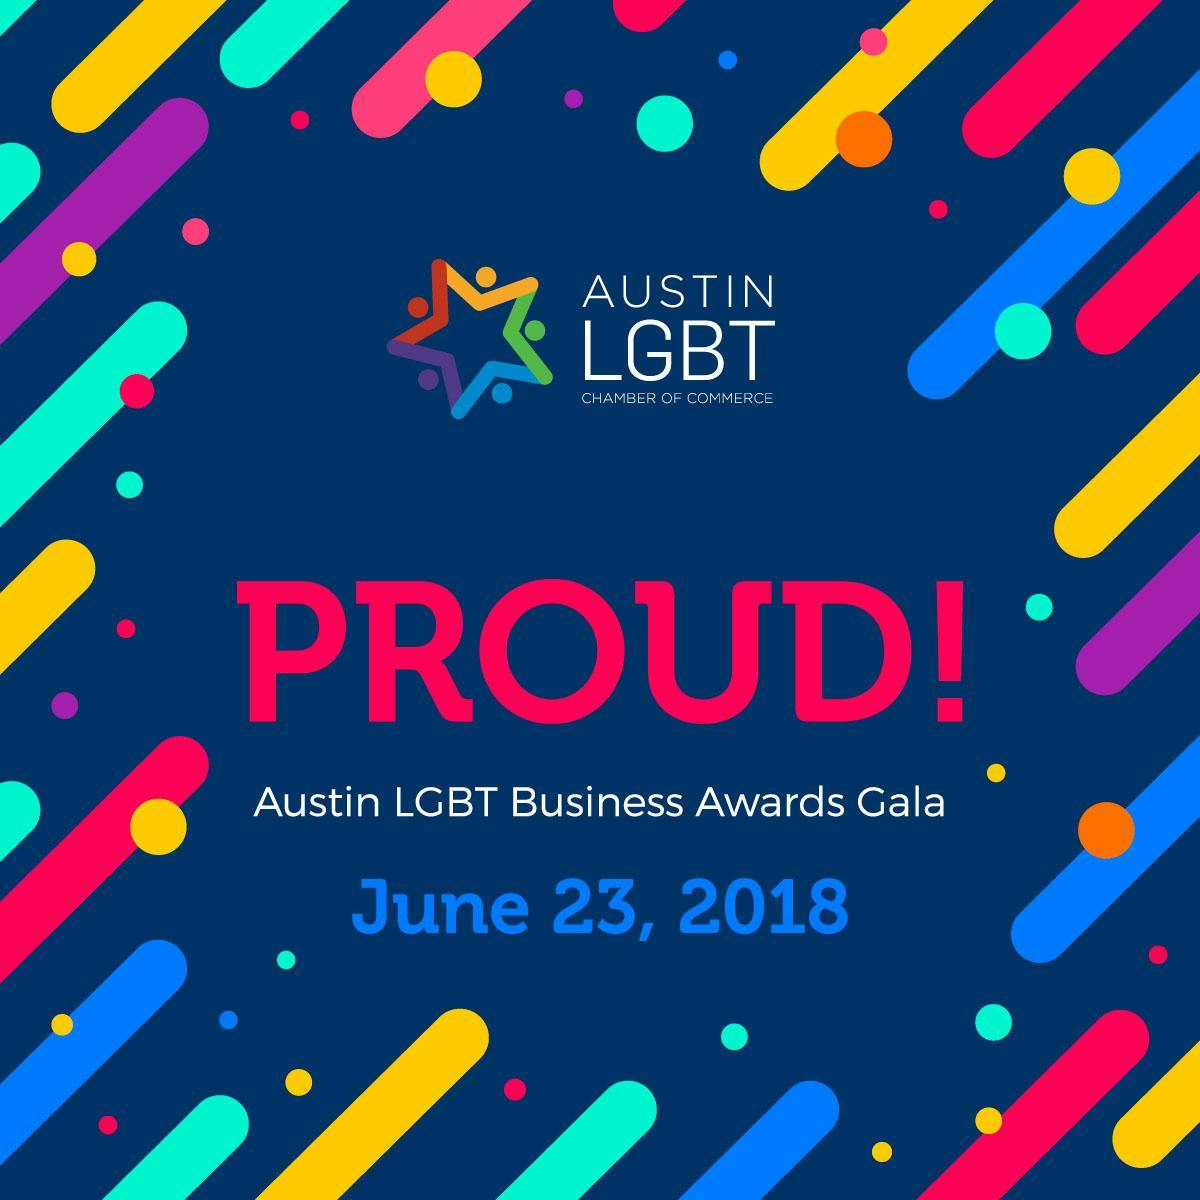 2018 PROUD! Gala & Austin LGBT Business Awards